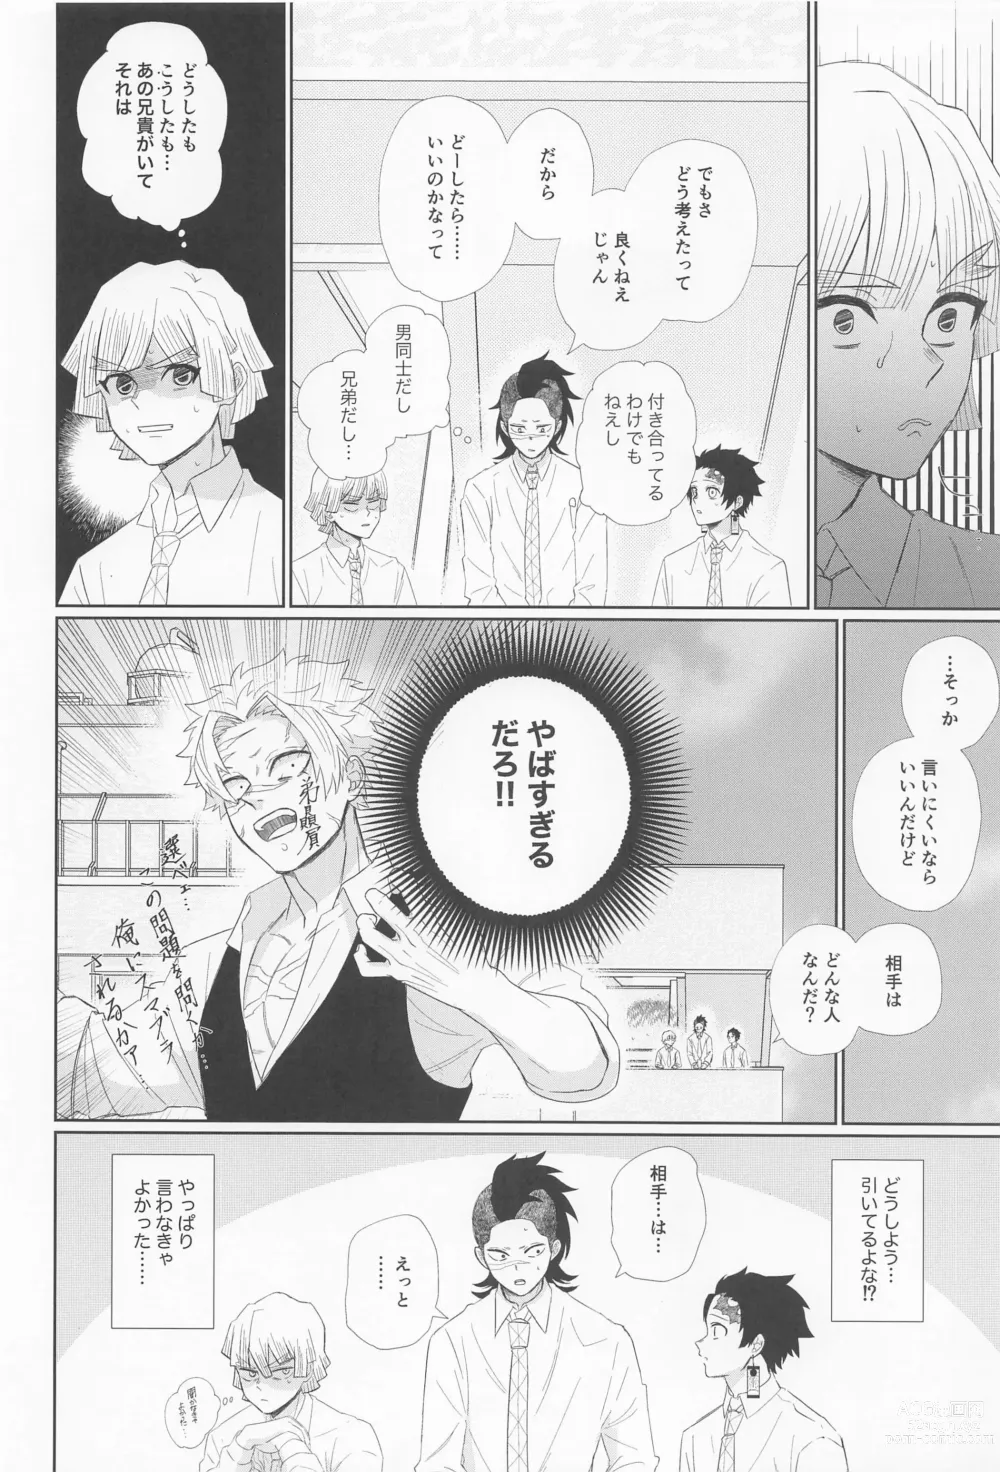 Page 14 of doujinshi Dare ni Demo Himitsu wa Aru - Everyone has secrets.